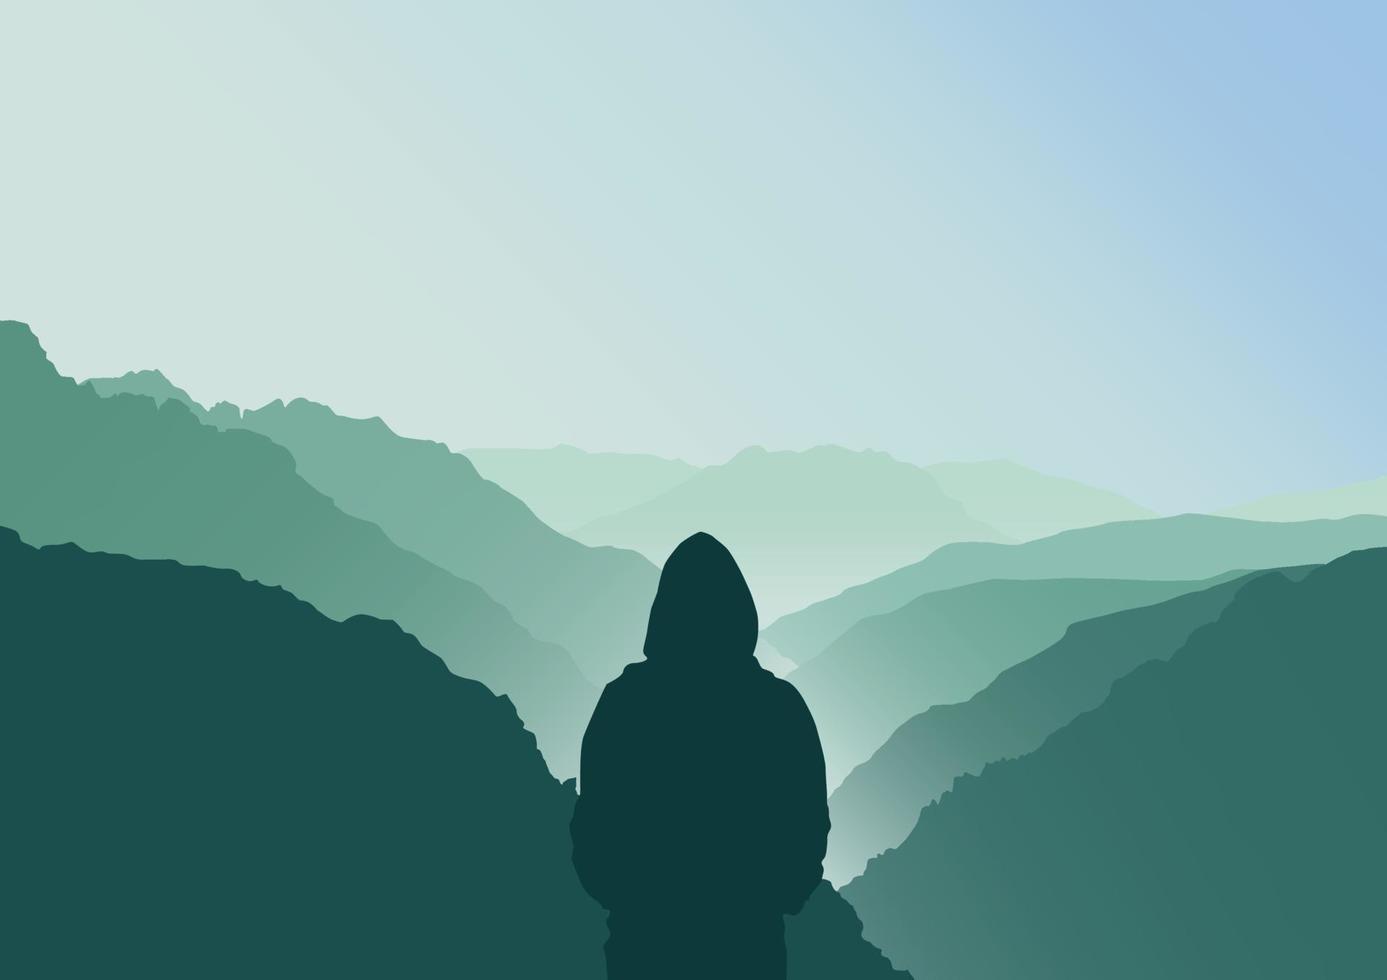 silueta de un persona en el montañas, vector ilustración.